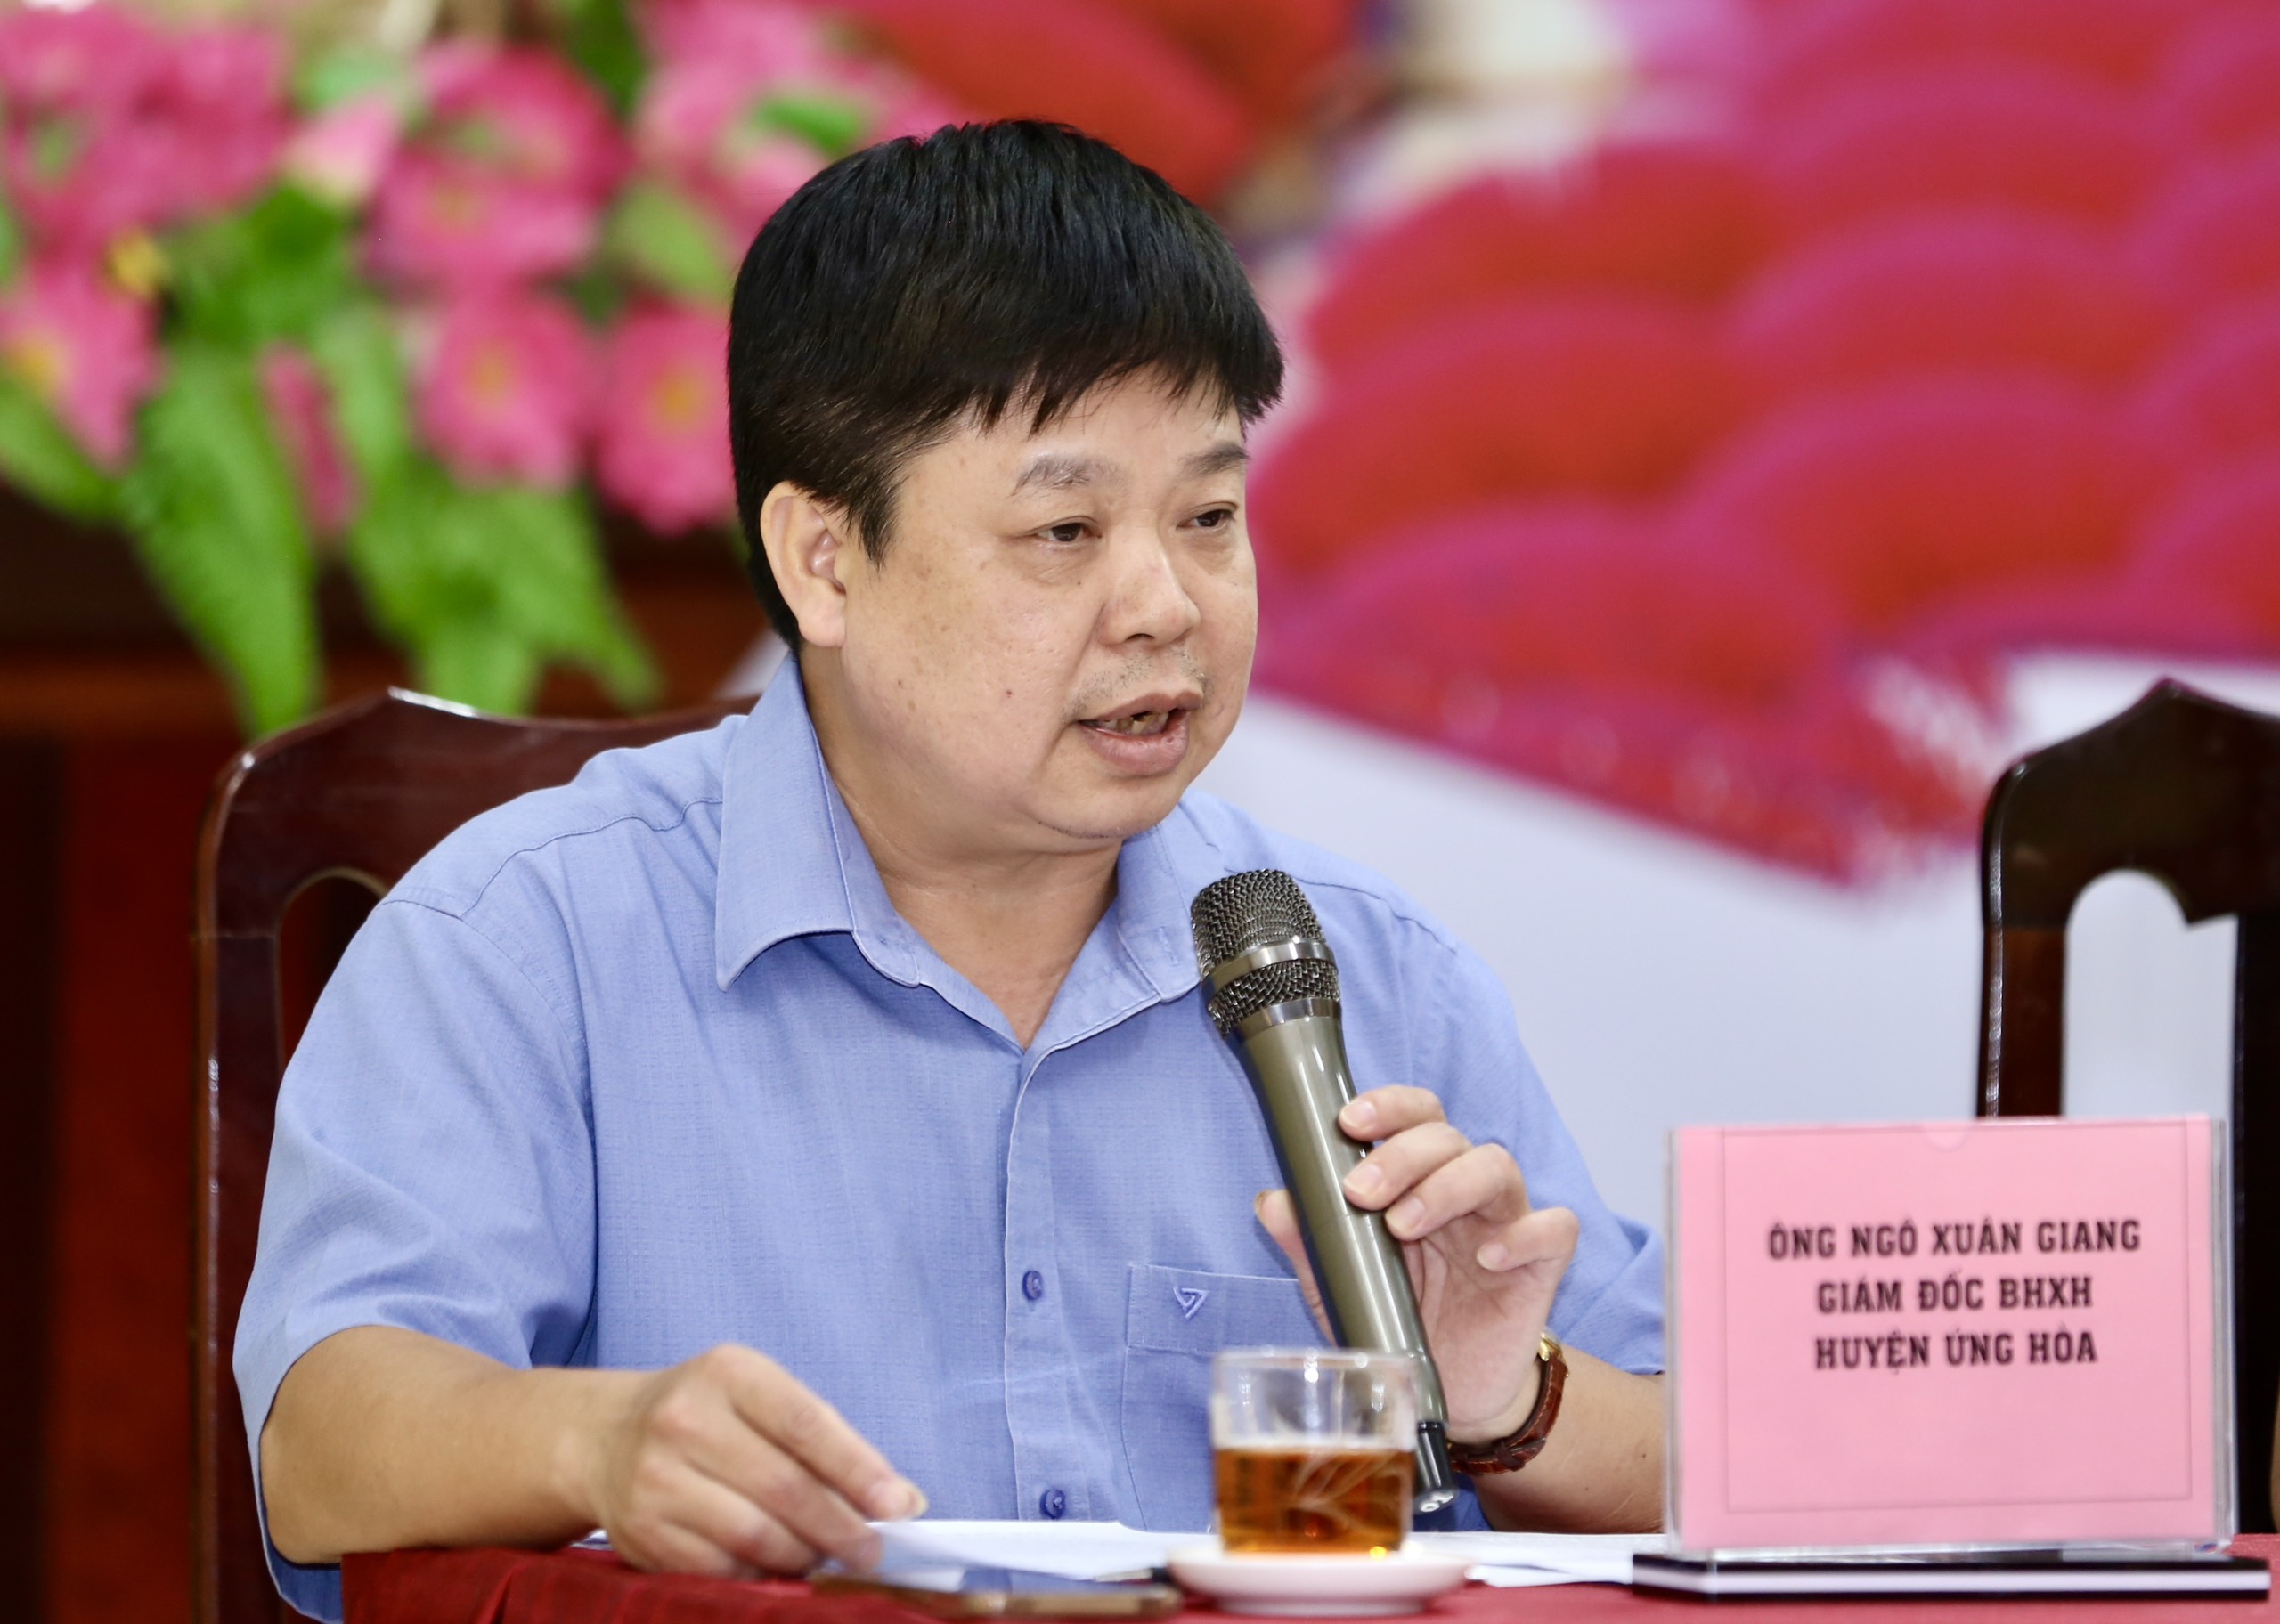 Ngỡ ngàng trước hàng loạt lý do khiến lao động làng nghề ở Hà Nội không muốn tham gia BHXH tự nguyện- Ảnh 3.